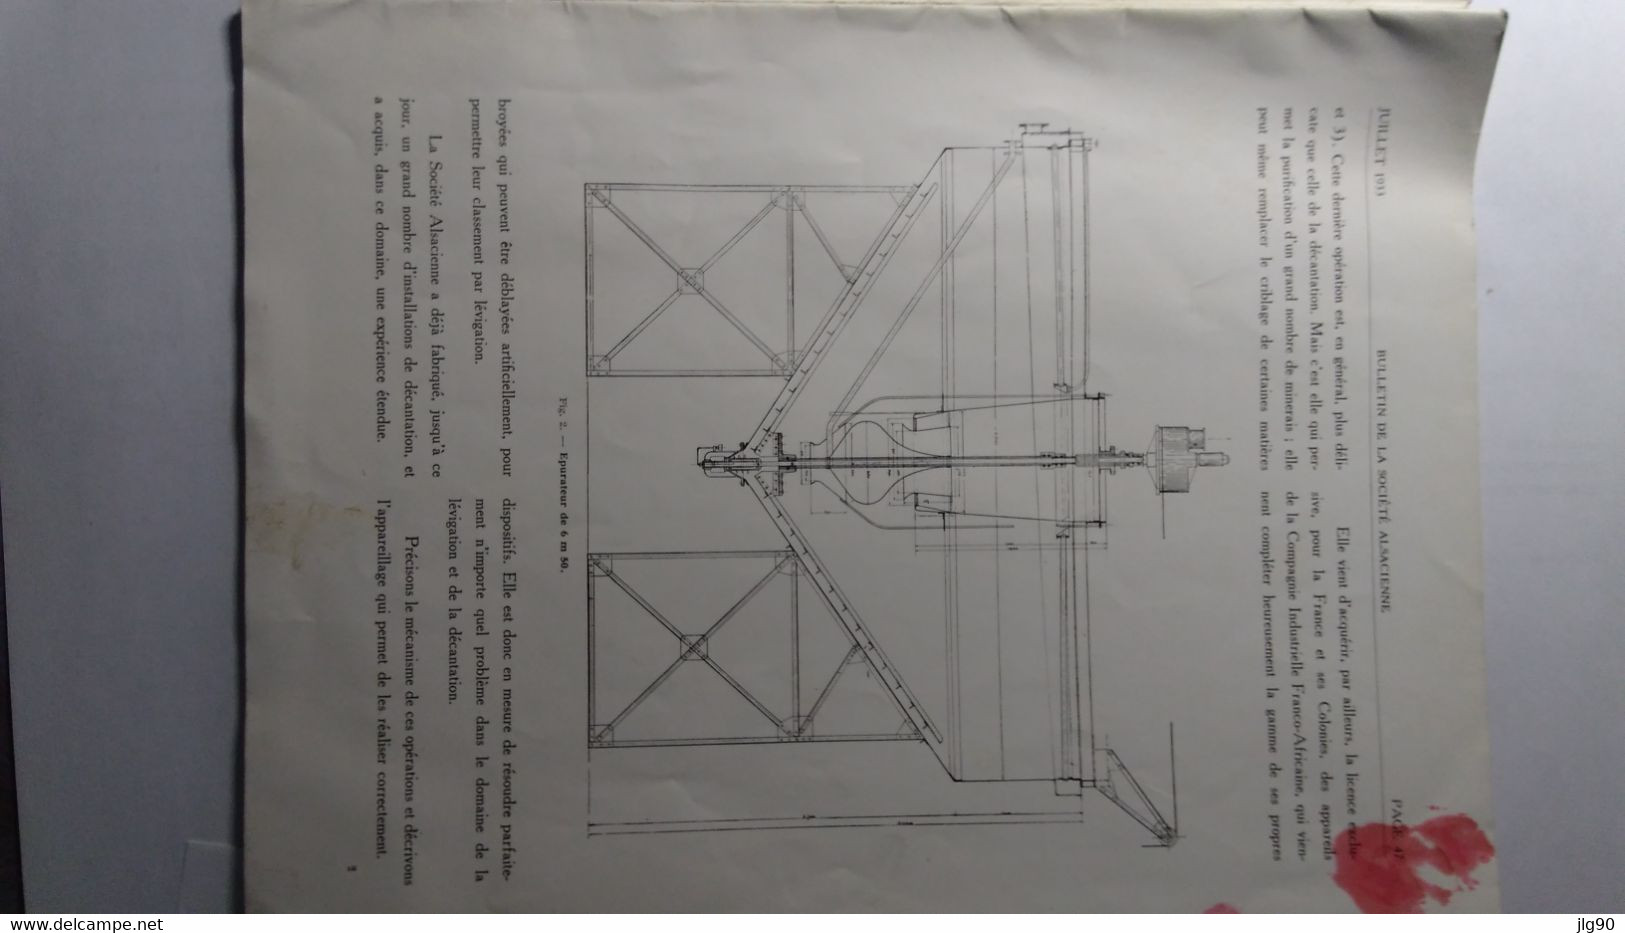 Bulletin De La Société Alsacienne De Constructions Mécaniques Juillet 1933, 64 Pages - Machines